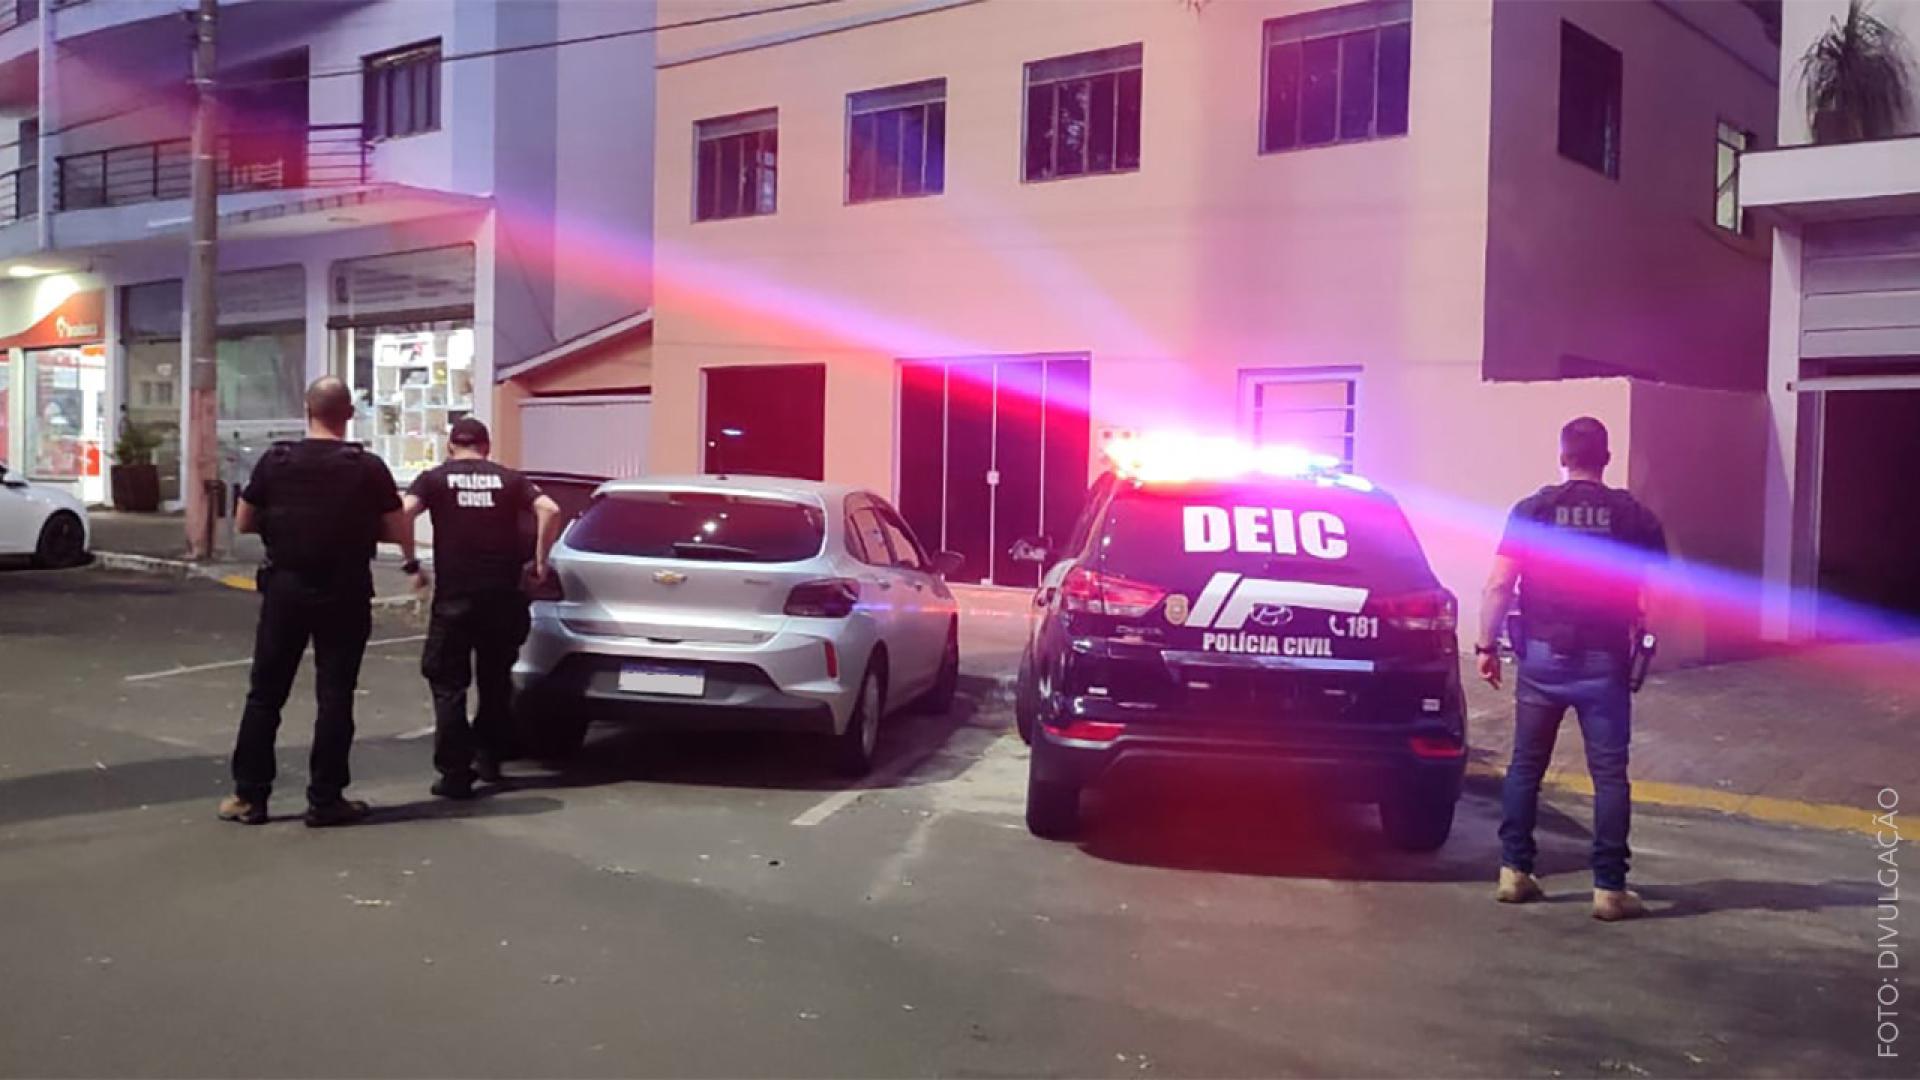 Imagem mostra veículo da polícia civil com luzes de emergência ligadas parado em frente a um prédio. Há três policiais de costas na imagem. 